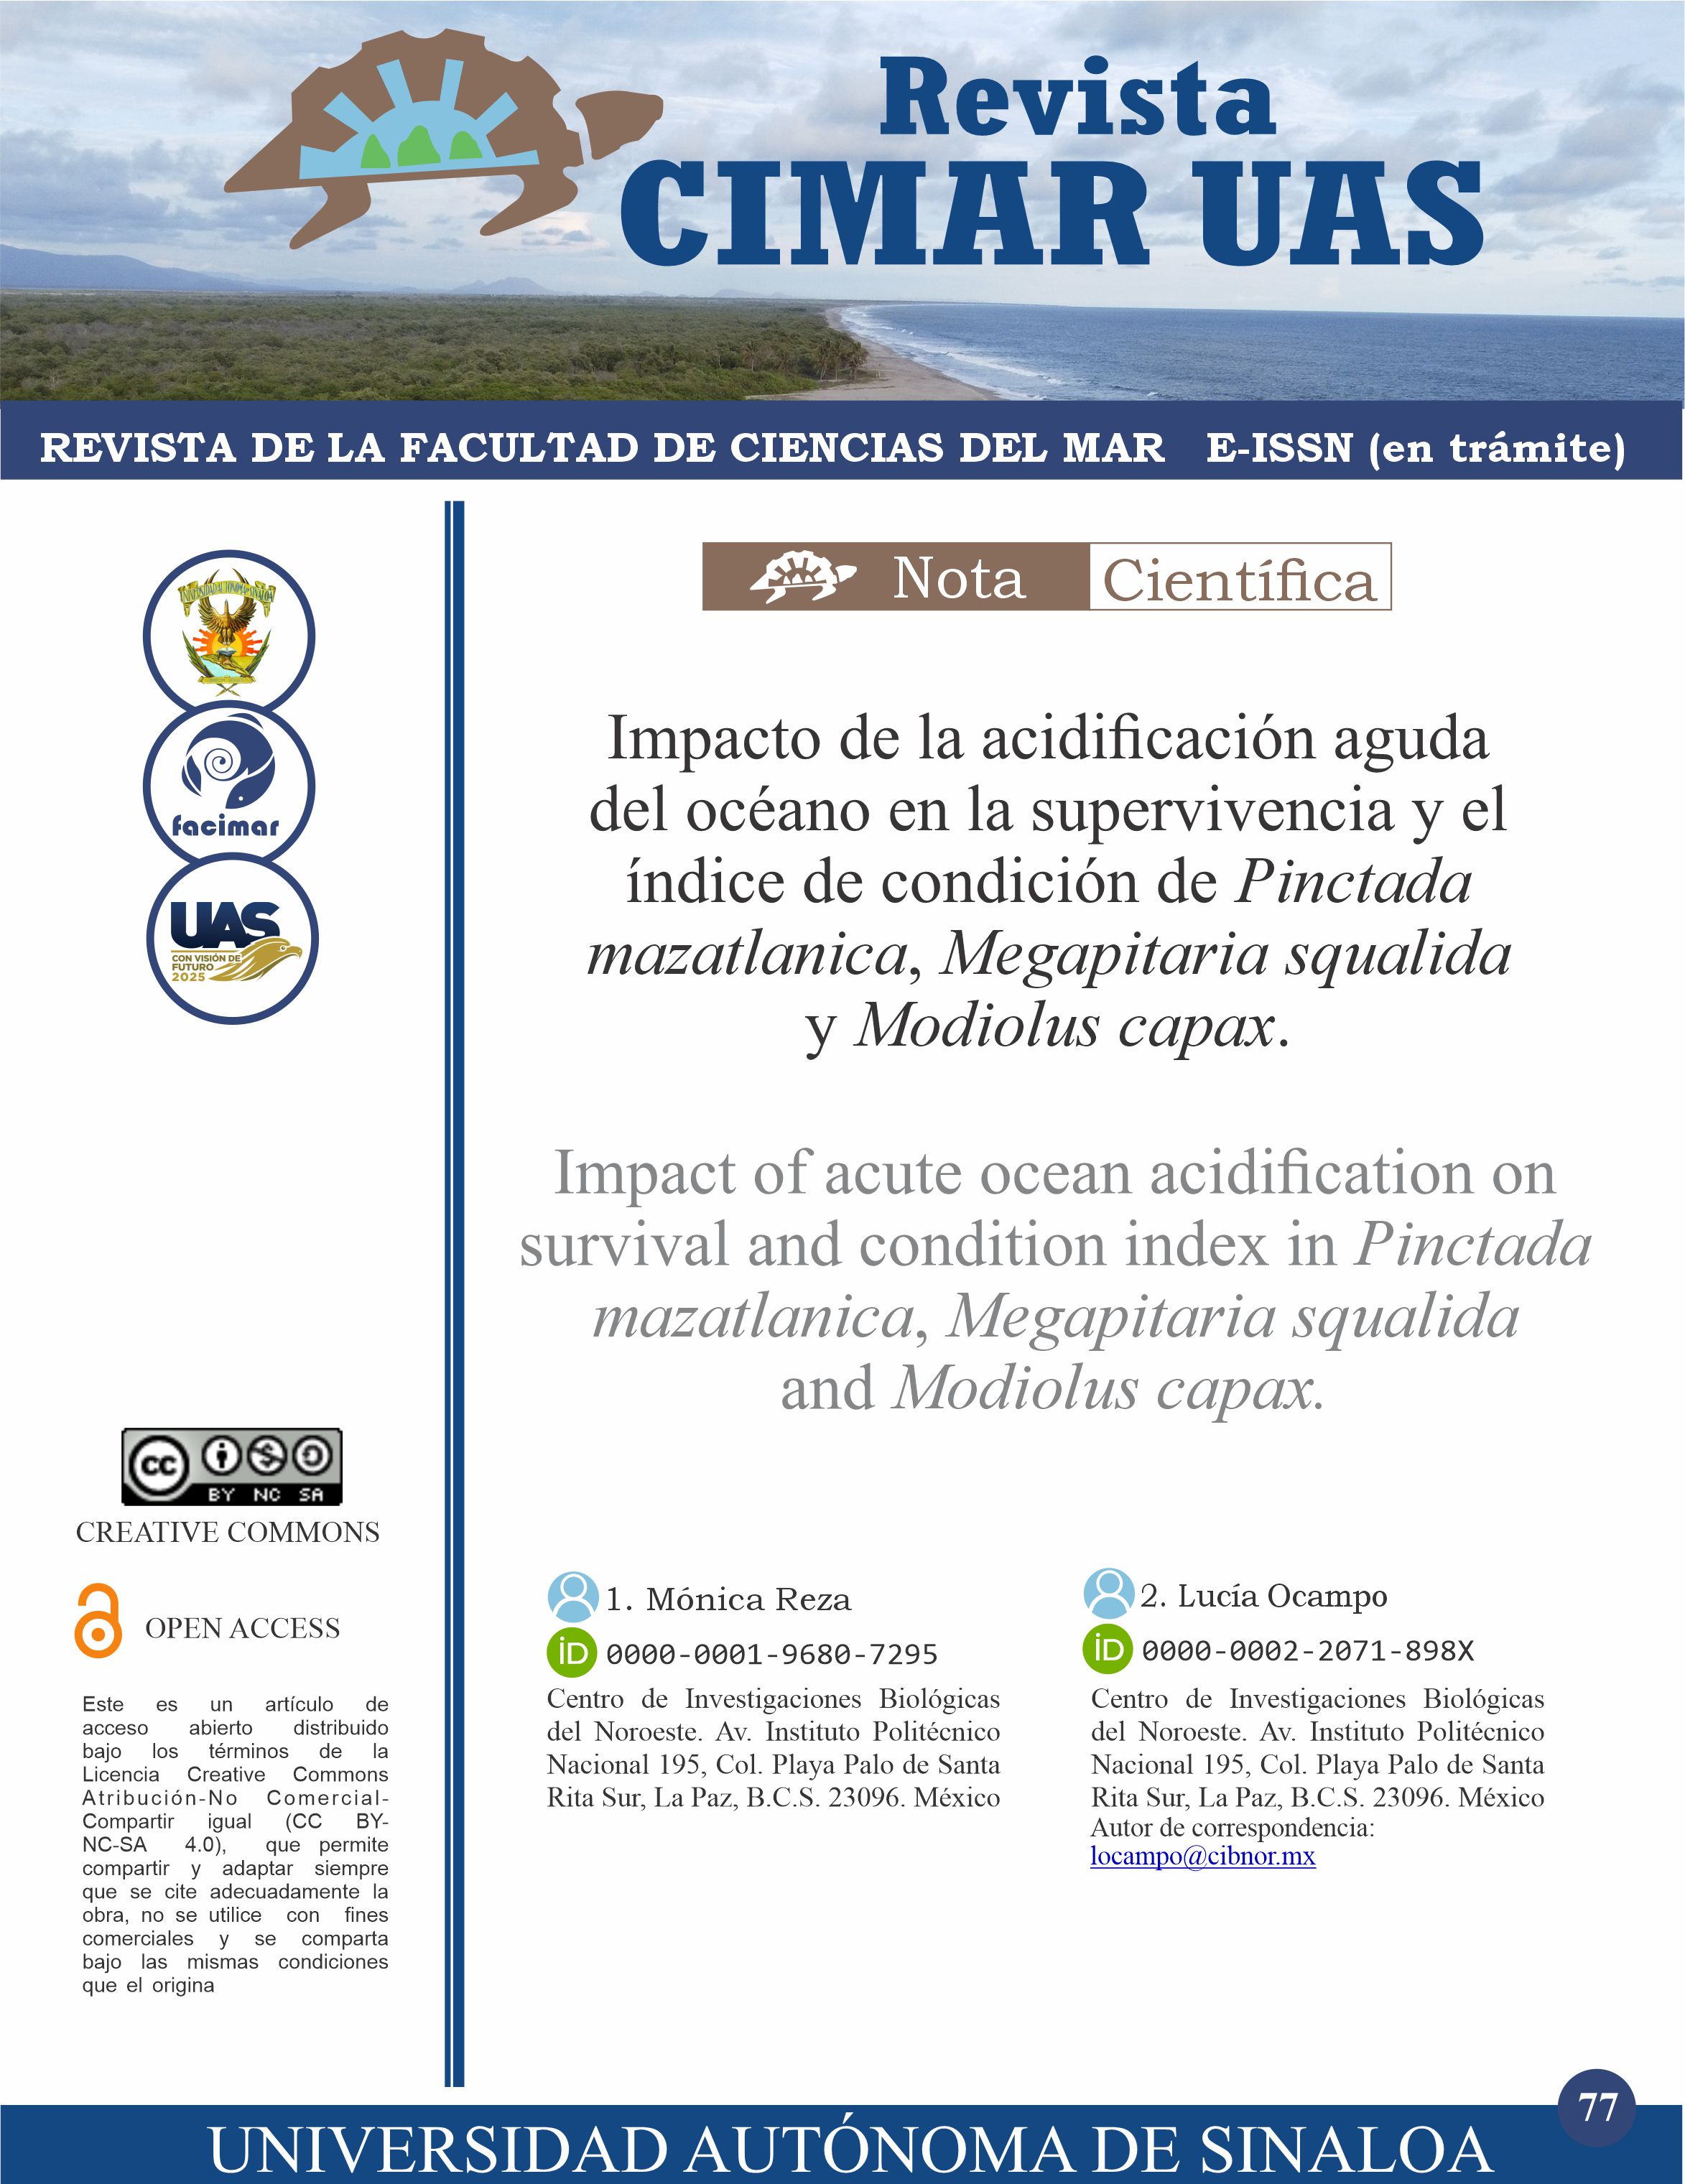 Impacto de la acidificación aguda del océano en la supervivencia y el índice de condición de Pinctada mazatlanica, Megapitaria squalida y Modiolus capax.